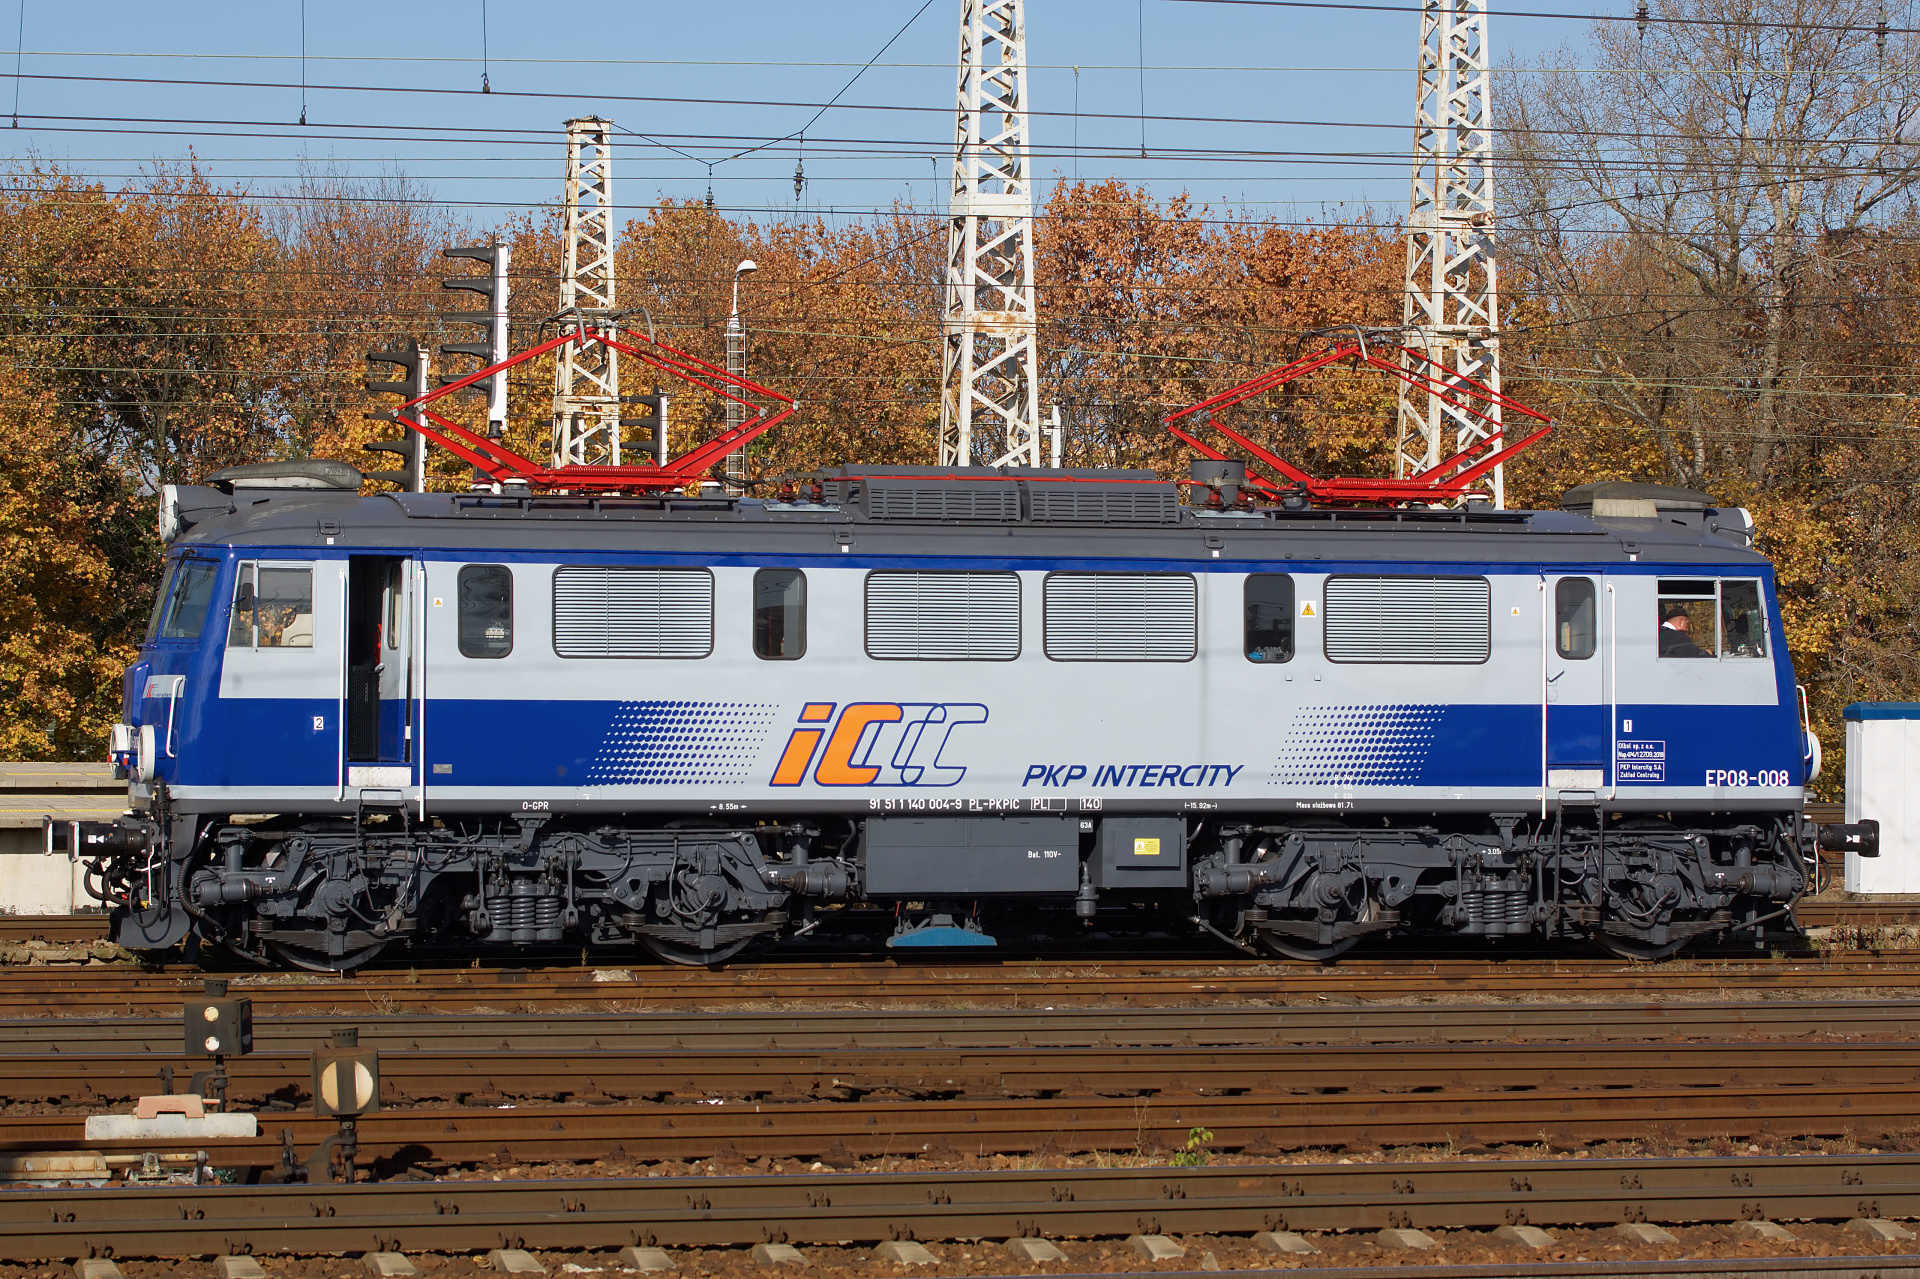 EP08-008 (Pojazdy » Pociągi i lokomotywy » Pafawag 102E)